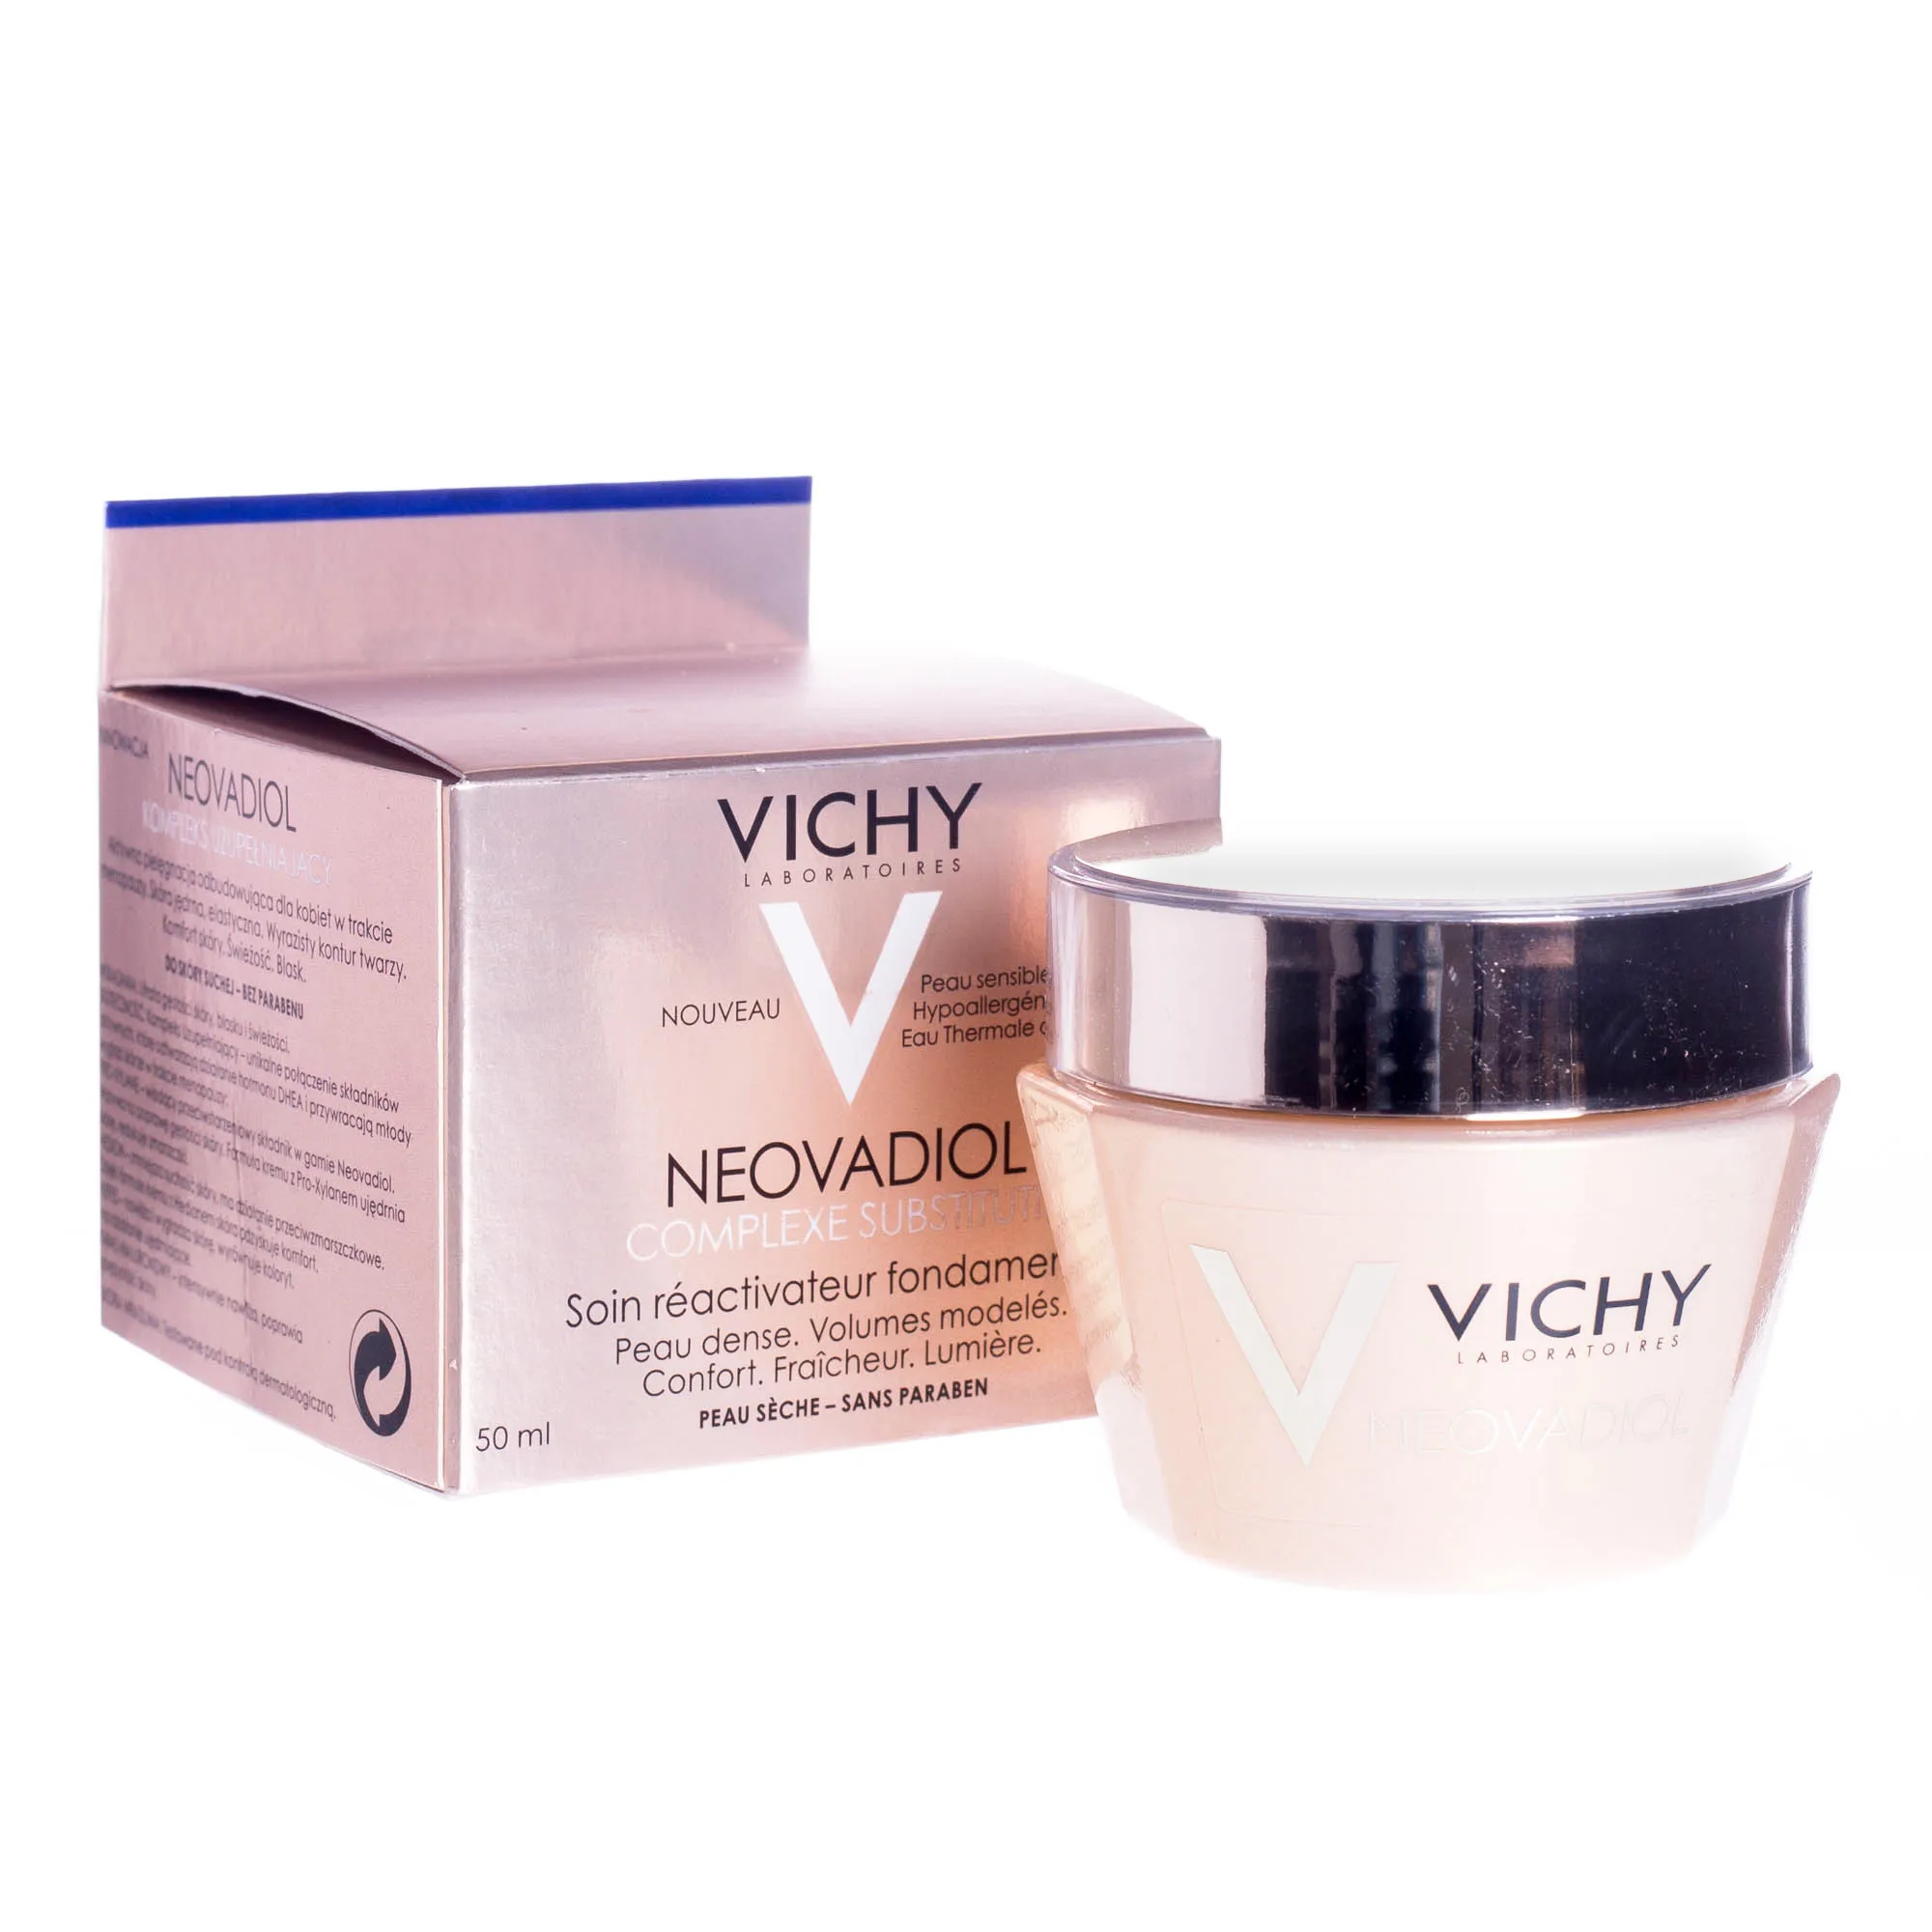 Vichy Laboratories Neovadiol kompleks uzupełniający, aktywna pielęgnacja odbudowująca, do skóry suchej, 50 ml